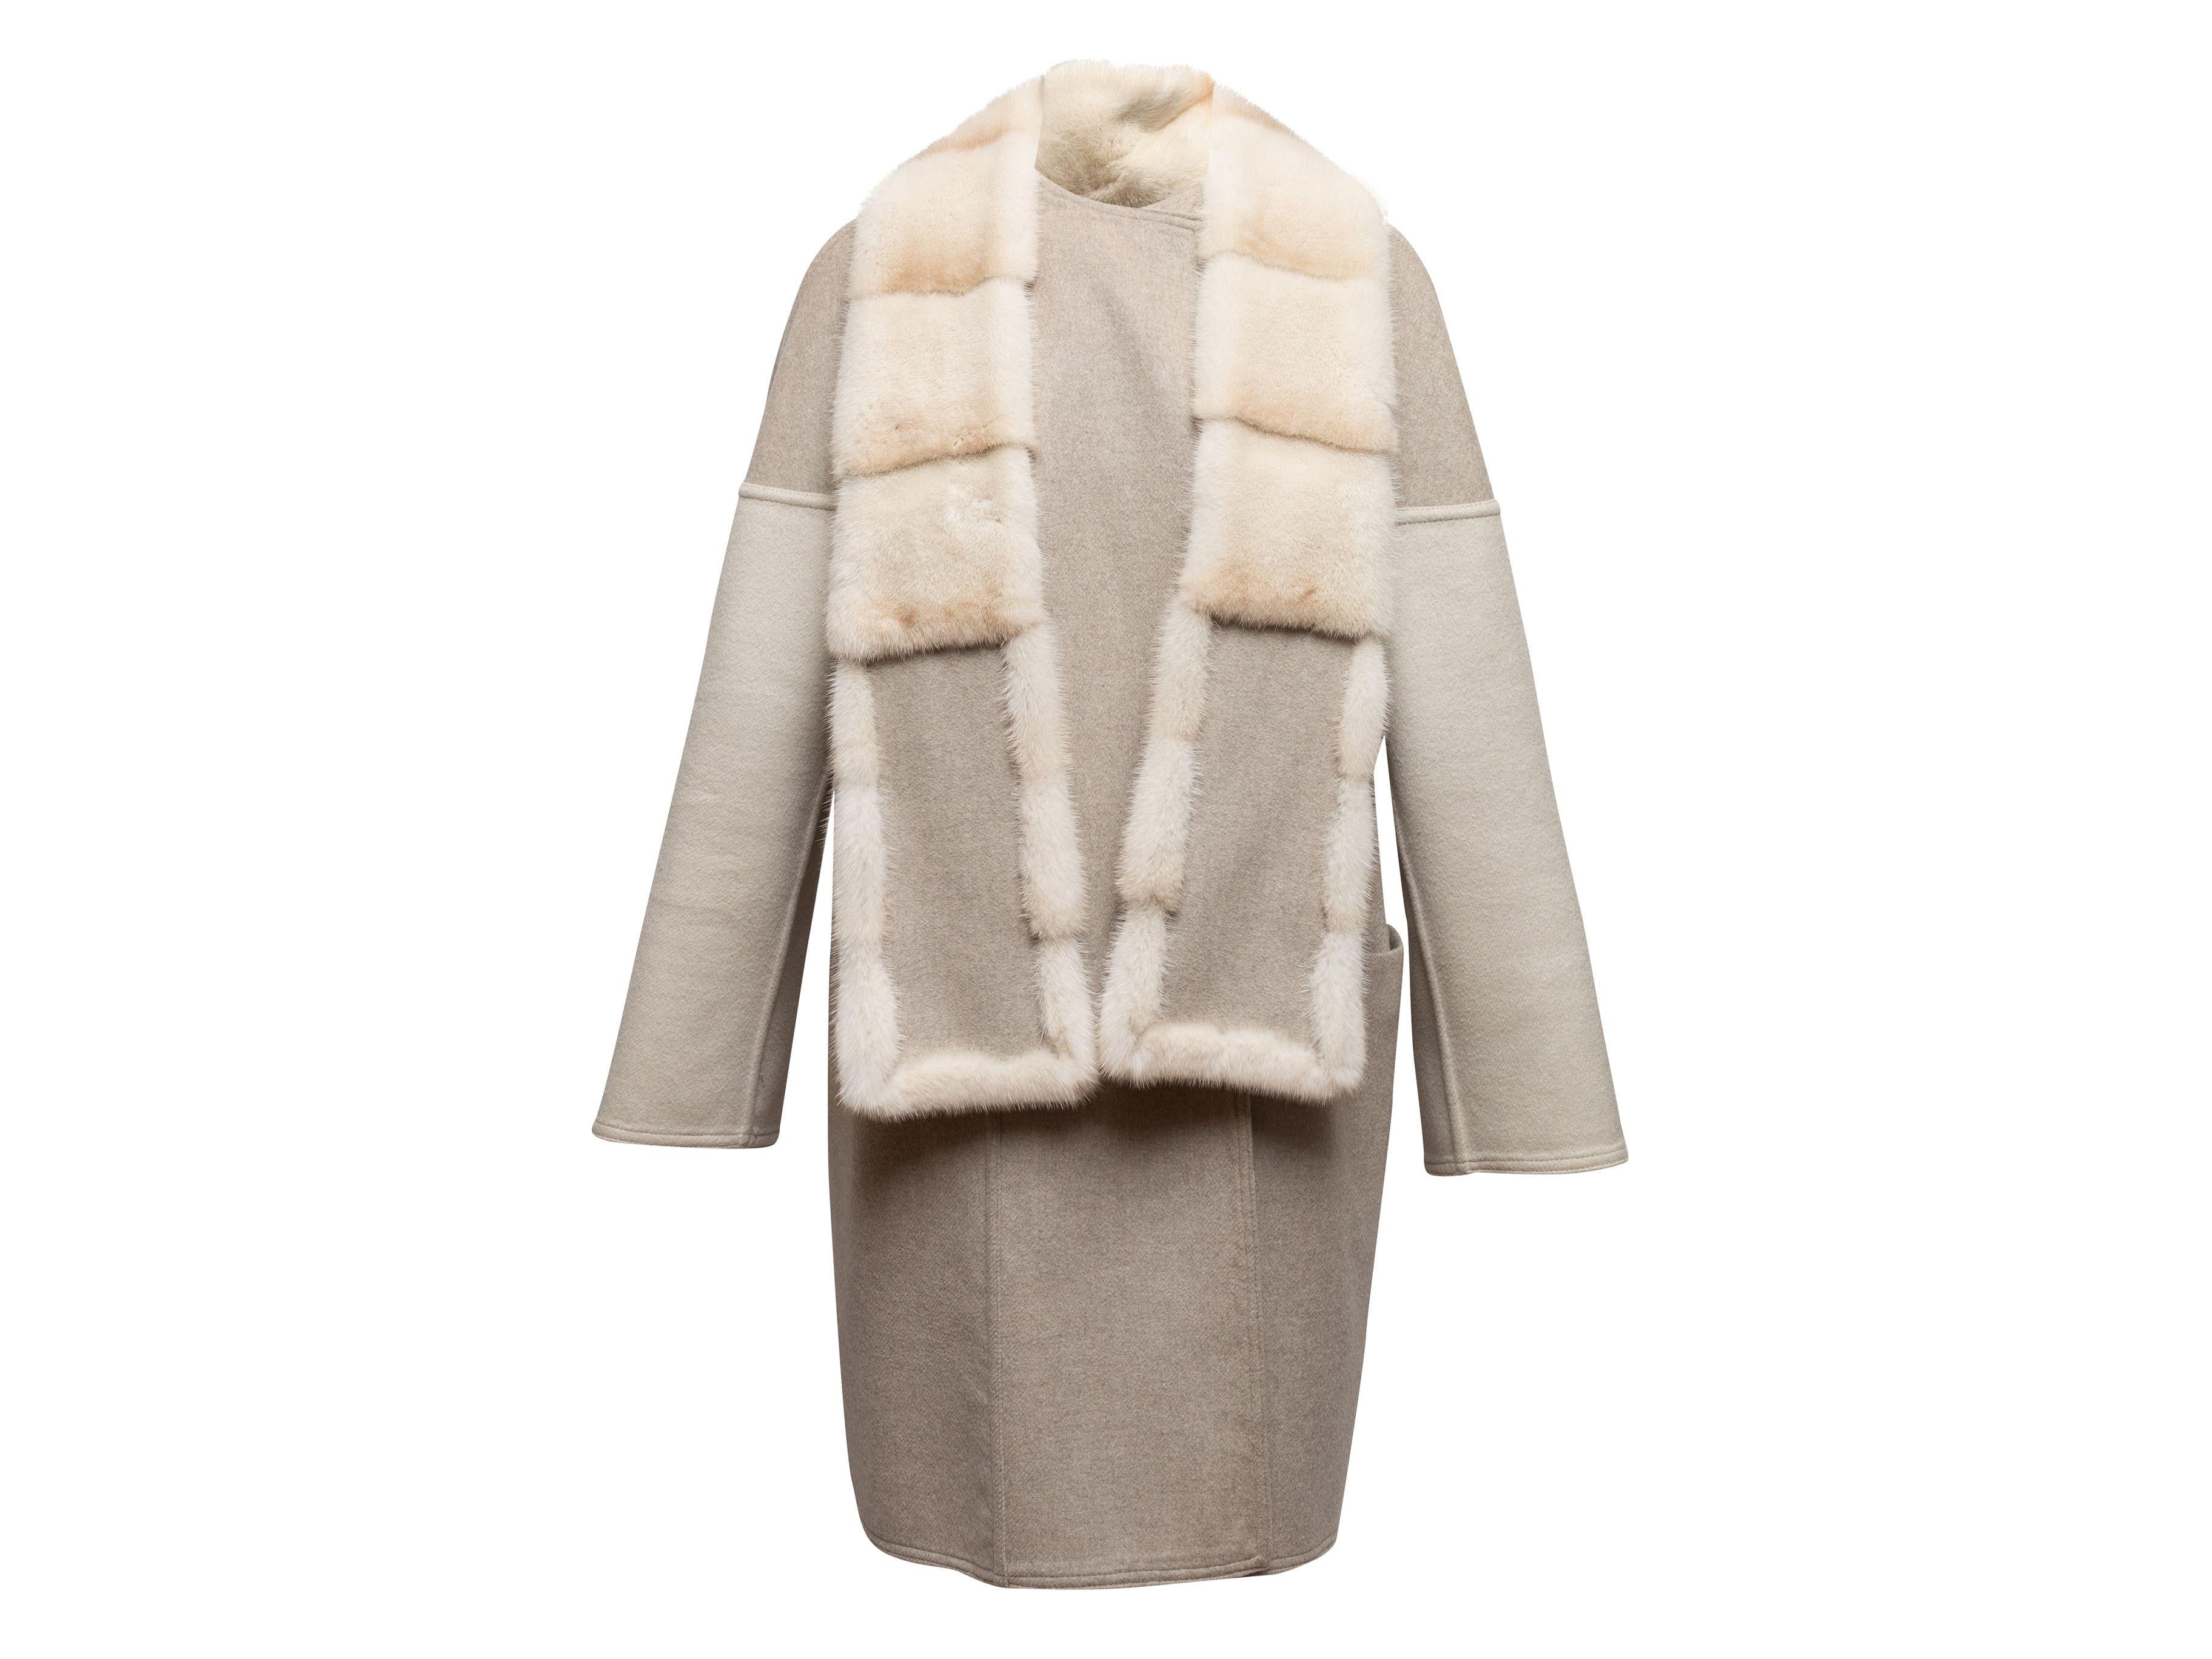 Meerstein Grey & Cream Reversible Cashmere & Sable Fur Coat 3